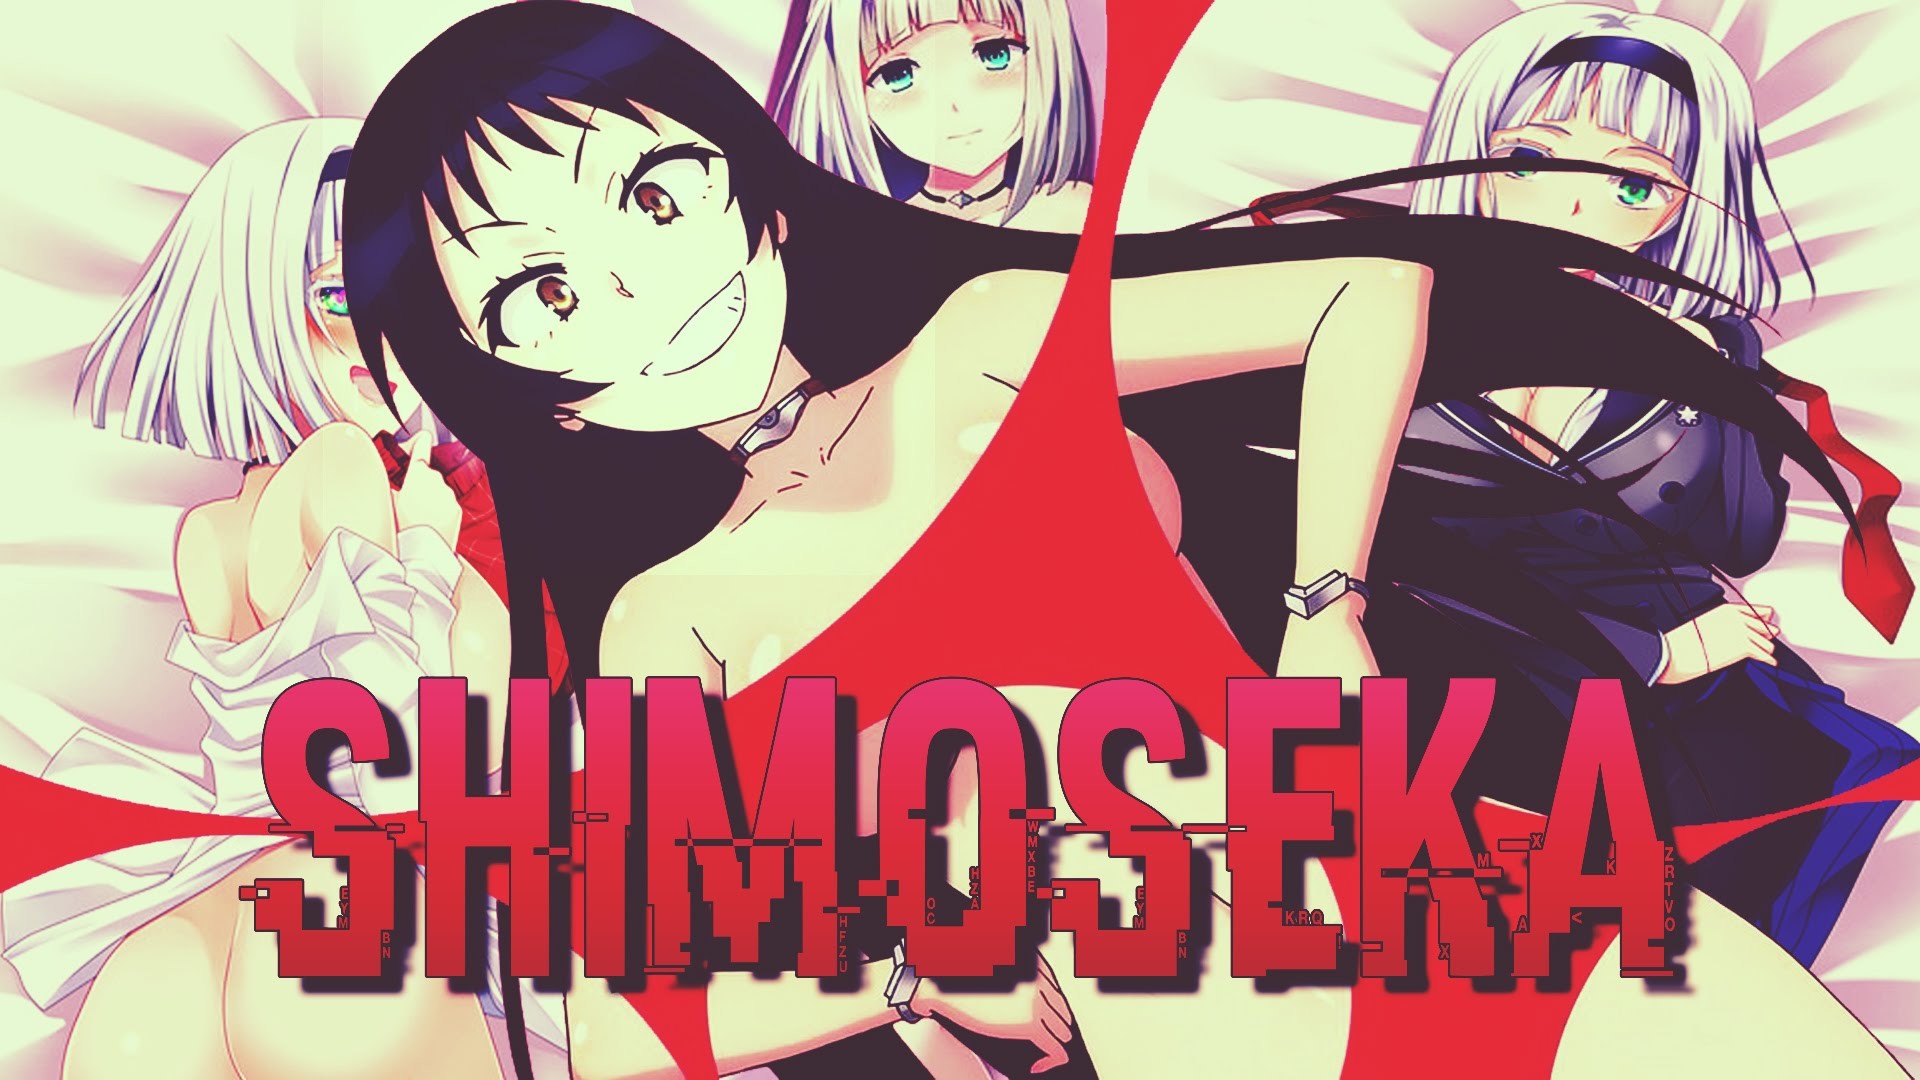 1920x1080 Anime News : EP 01 Shimoseka